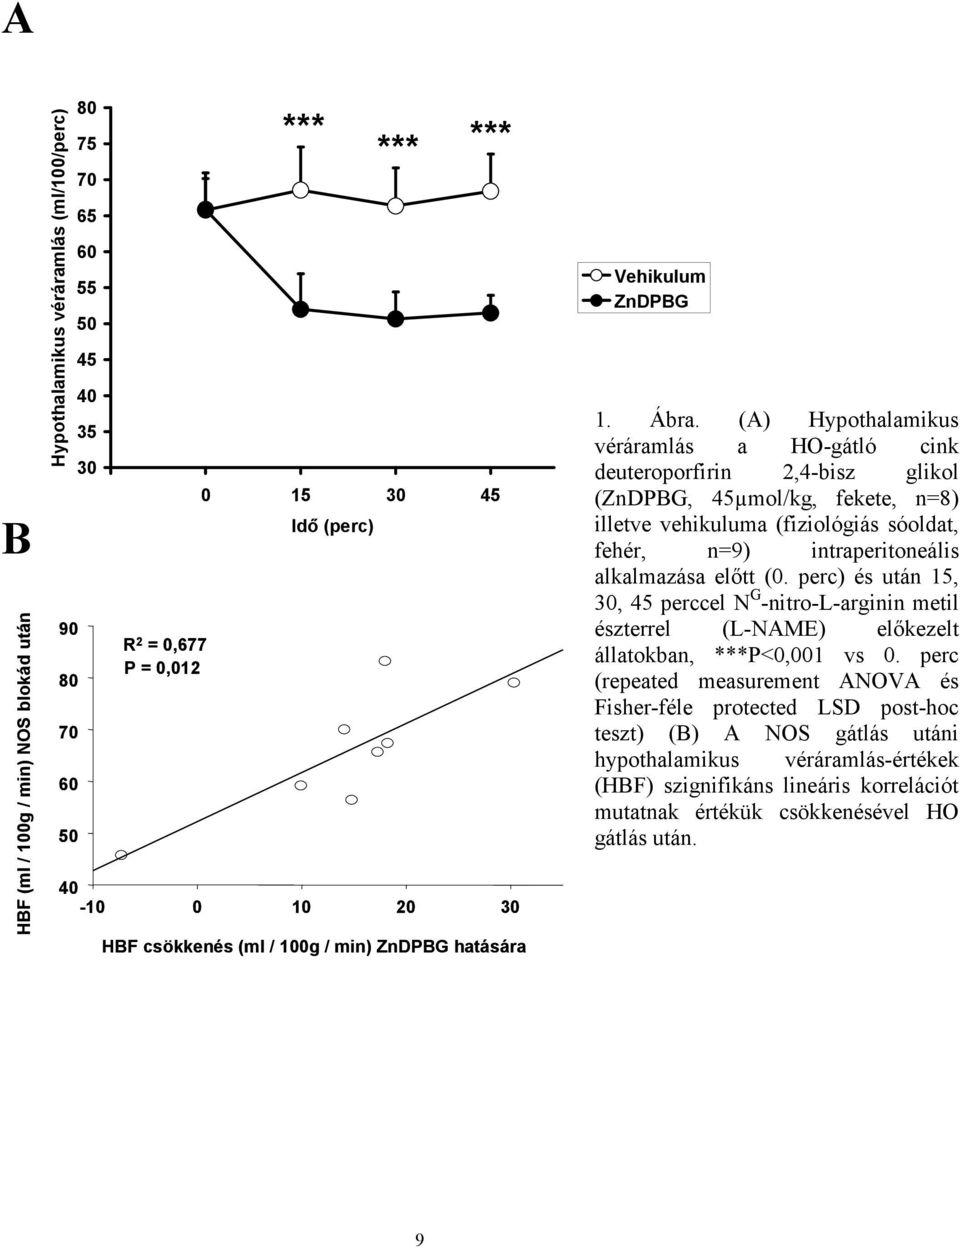 (A) Hypothalamikus véráramlás a HO-gátló cink deuteroporfirin 2,4-bisz glikol (ZnDPBG, 45µmol/kg, fekete, n=8) illetve vehikuluma (fiziológiás sóoldat, fehér, n=9) intraperitoneális alkalmazása előtt